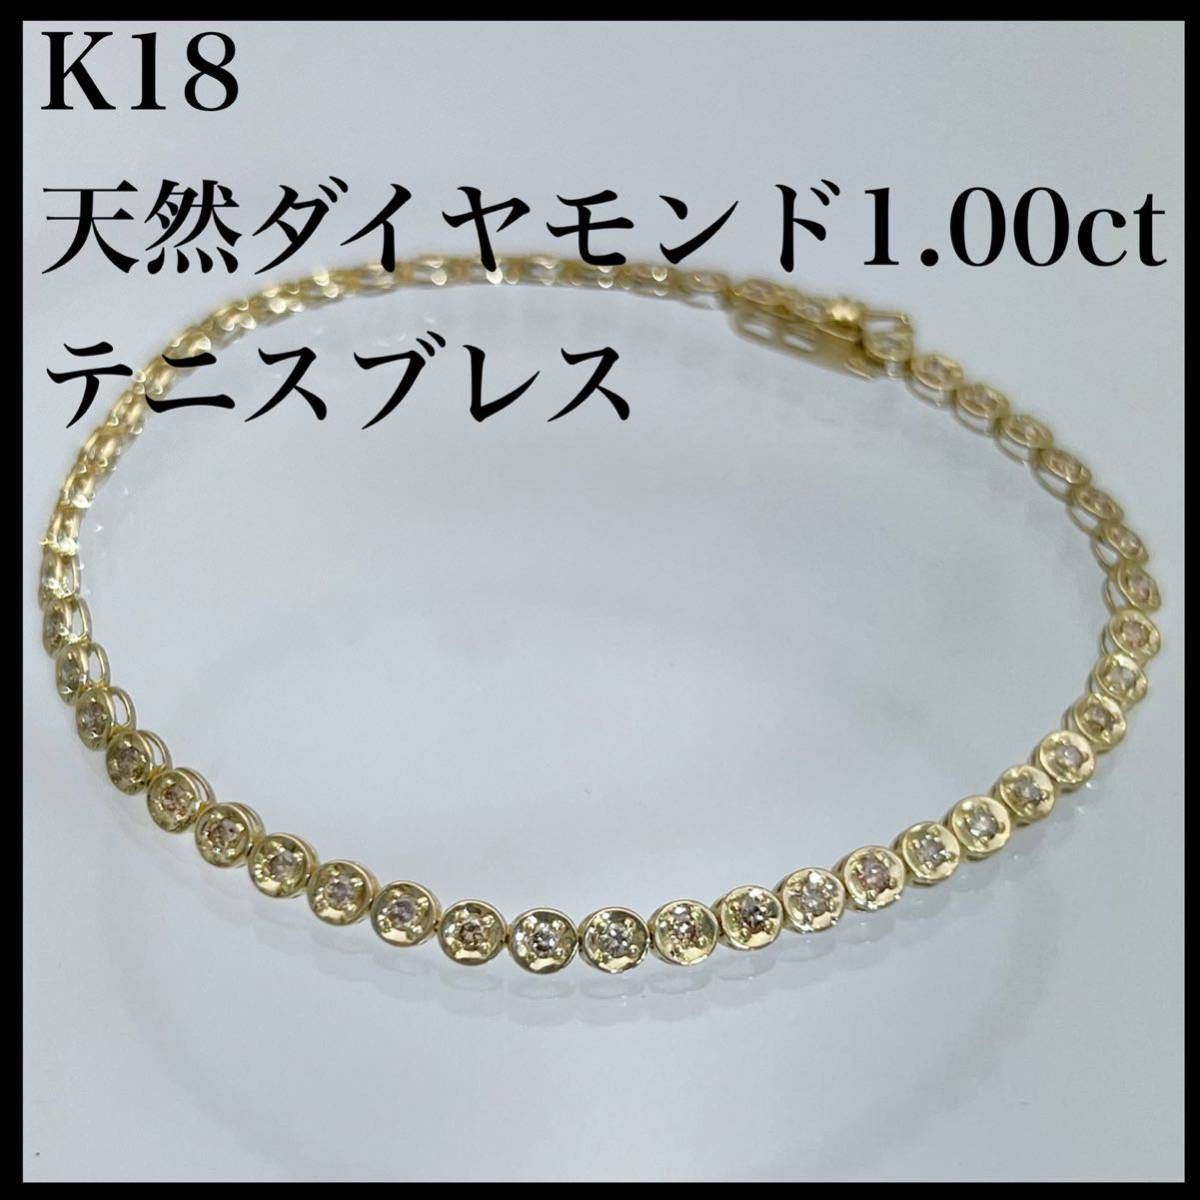 感謝価格】 k18WG 天然 ダイヤモンド 1.00ct ブレスレット テニスブレス